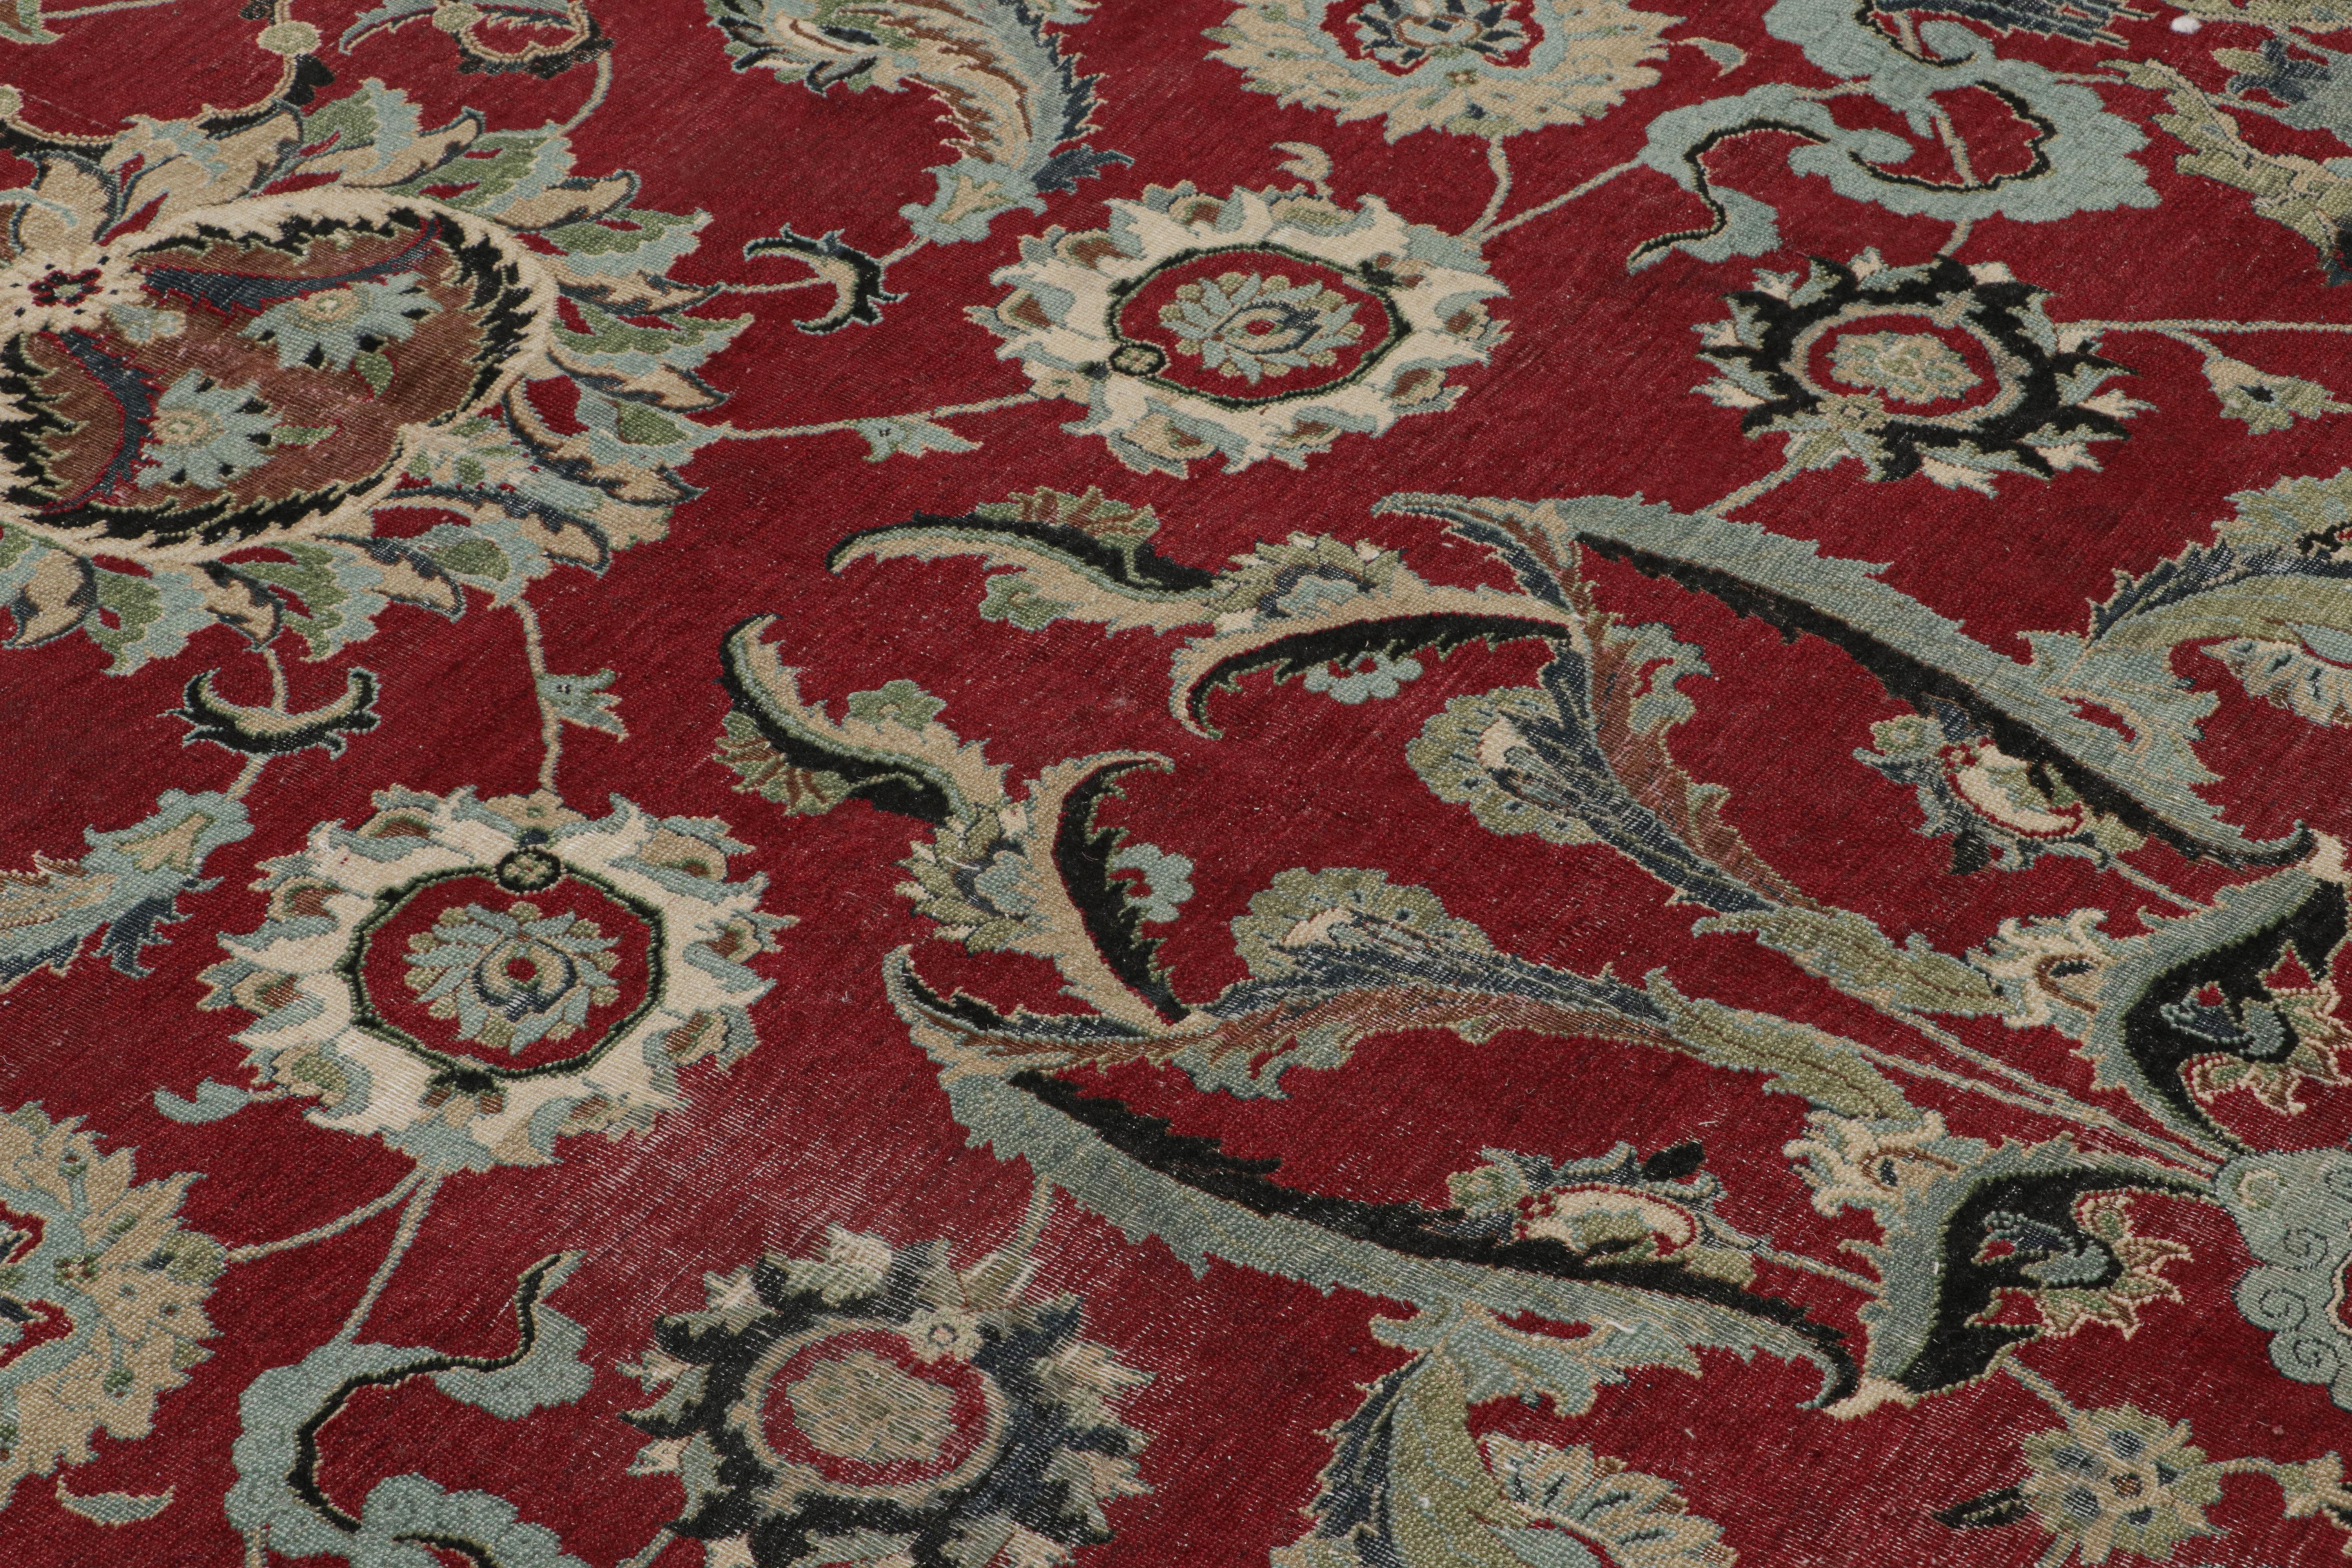 Noué à la main en laine, ce tapis carré de 5x5 est inspiré d'un rare tapis d'Ispahan du XVIIe siècle, qui compte parmi les tapis persans les plus recherchés de son époque.

Sur le Design : 

Les connaisseurs admireront que ce tapis moderne présente